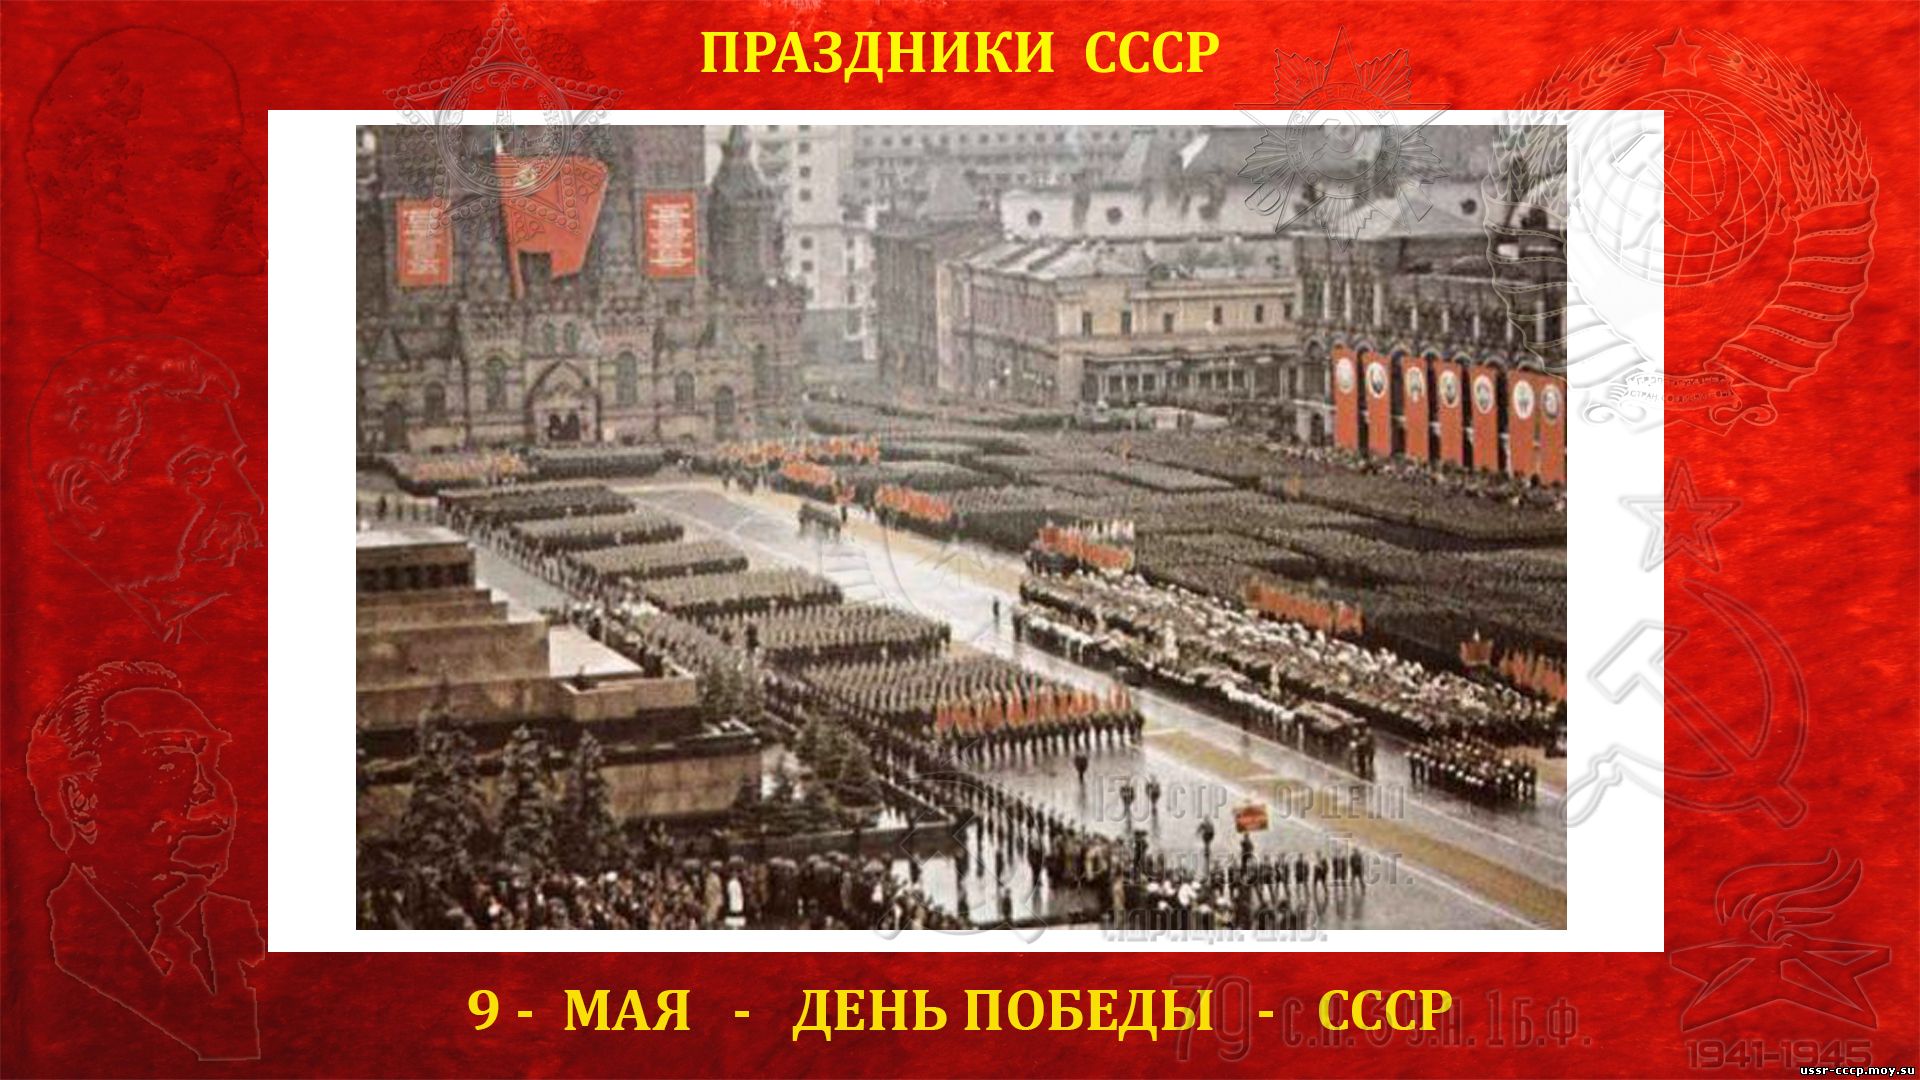 9 - мая День победы СССР над фашисткой Германией в ВОВ (1941—1945) (повествование)